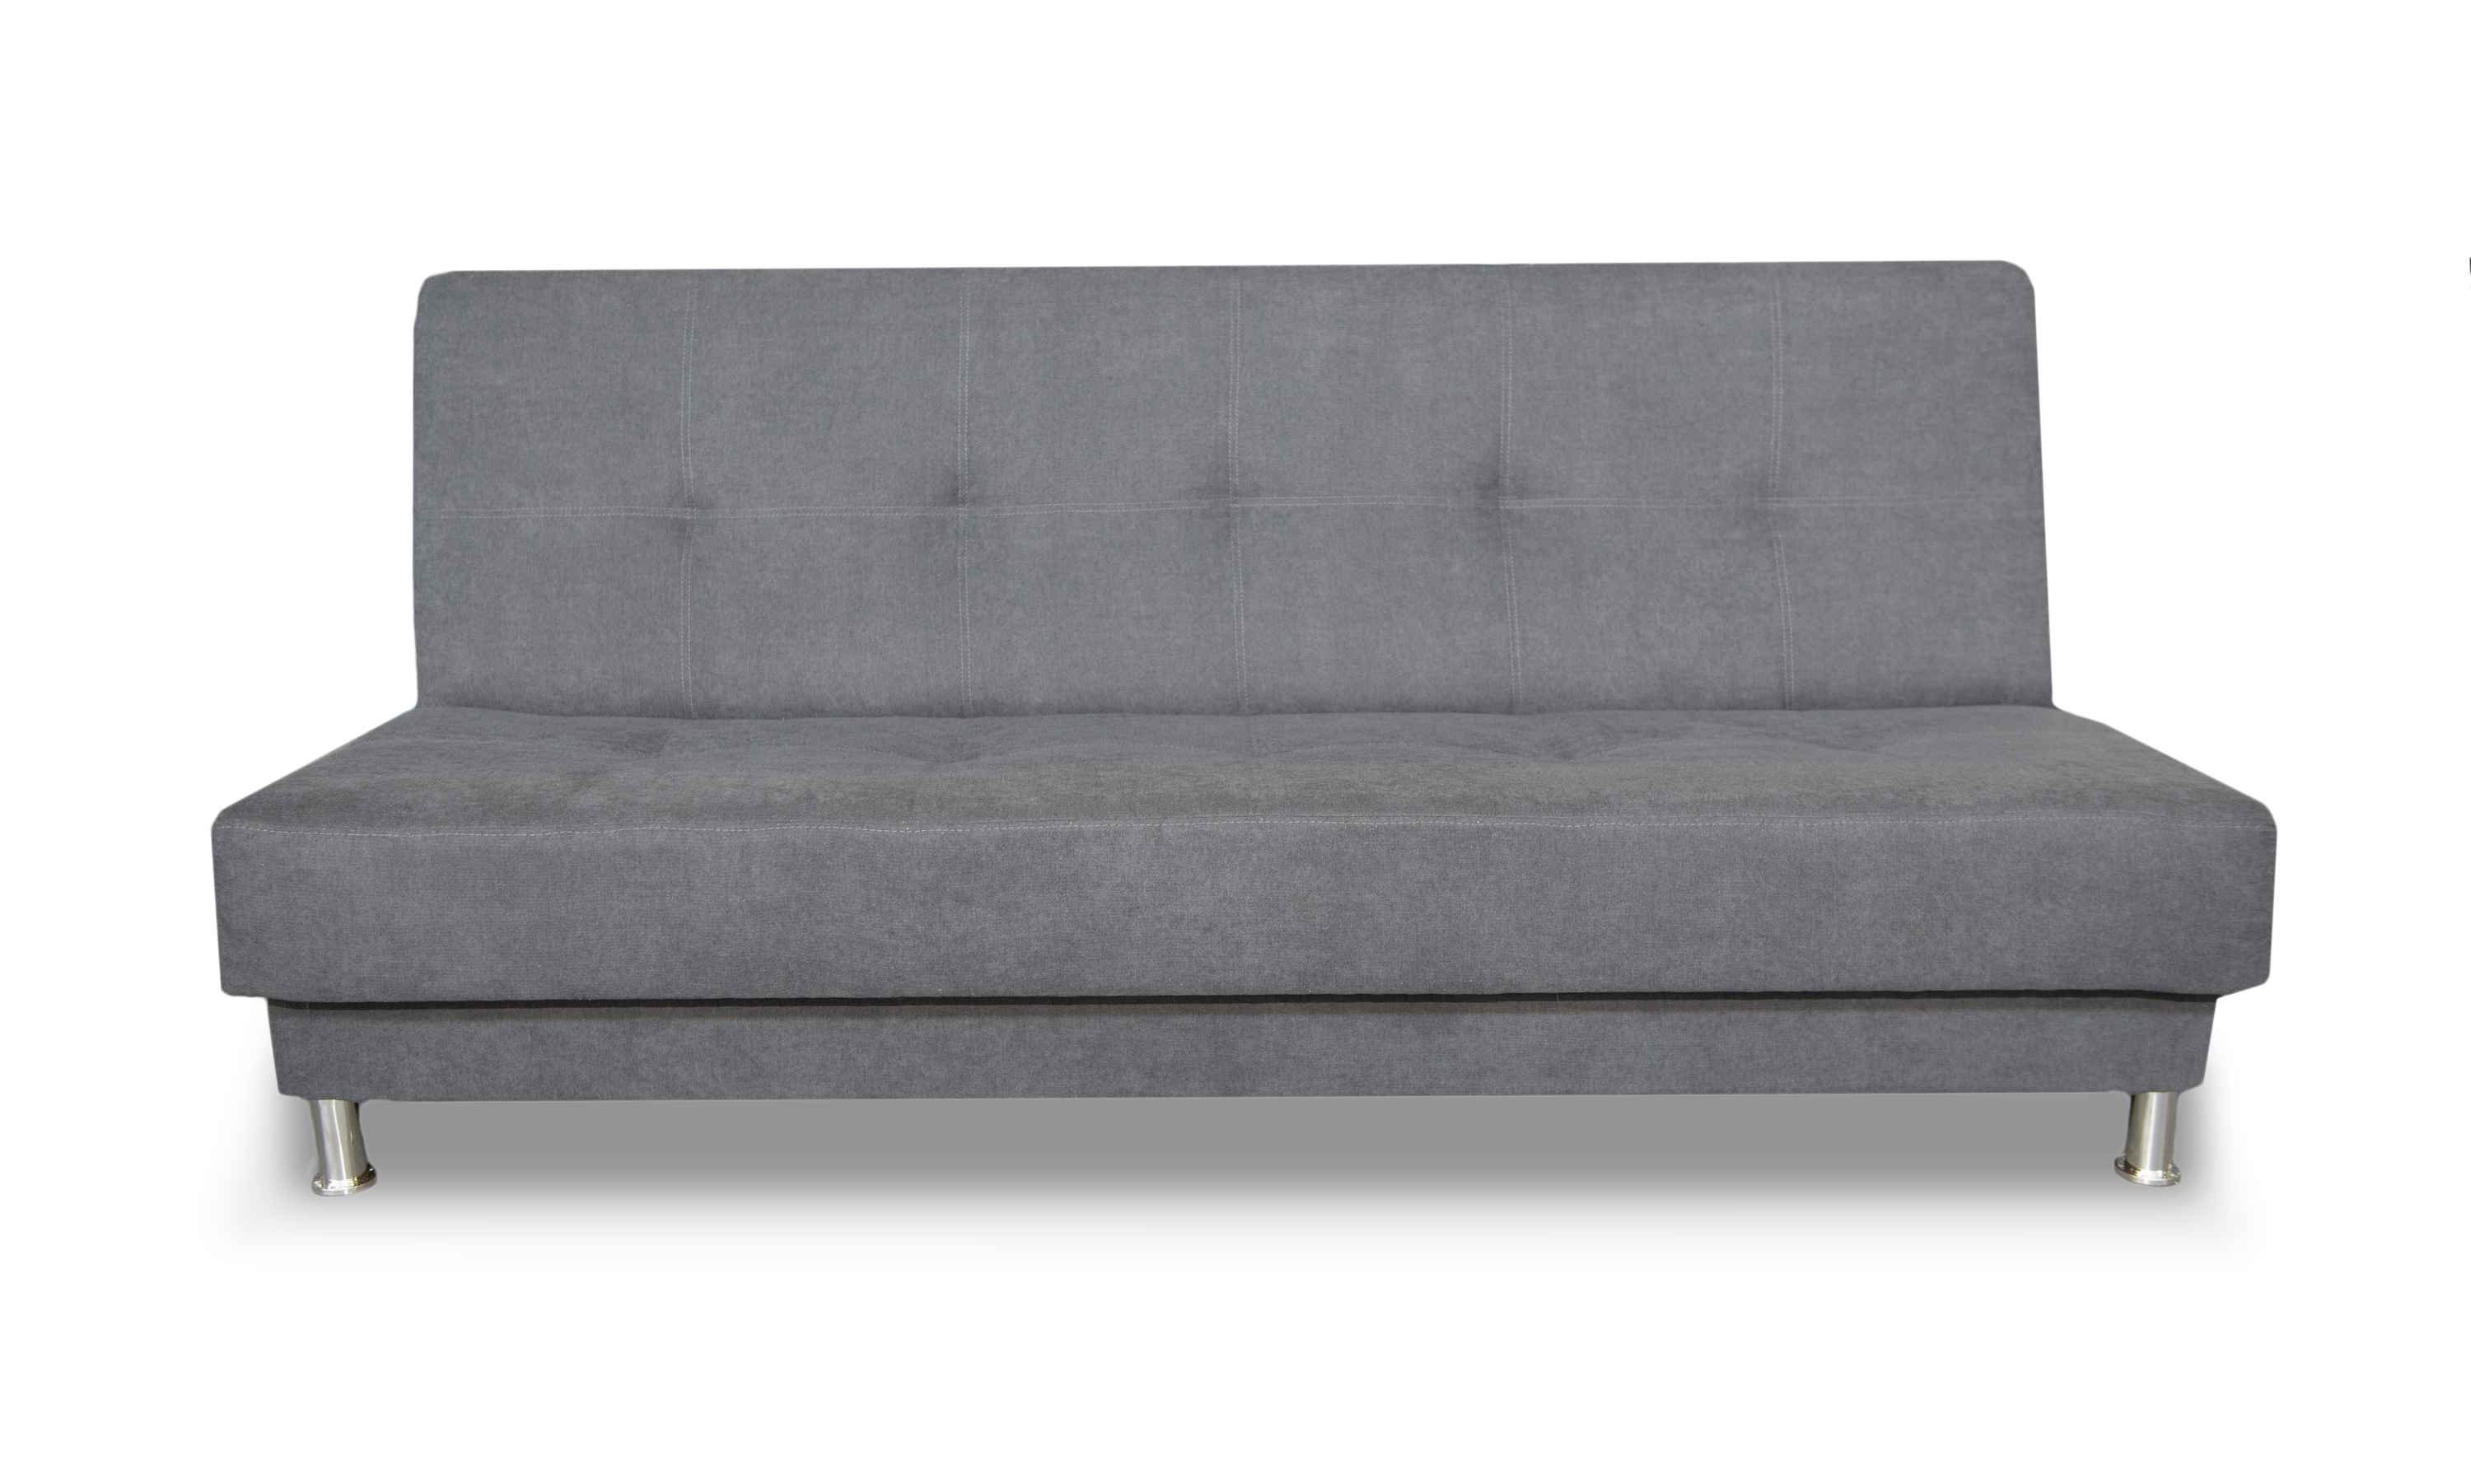 Dreisitzige Couch Dreisitzer-Sofa 3-Sitzer Schlaffunktion, Bettzeugbehälter, Grau mit Rosalia Siblo